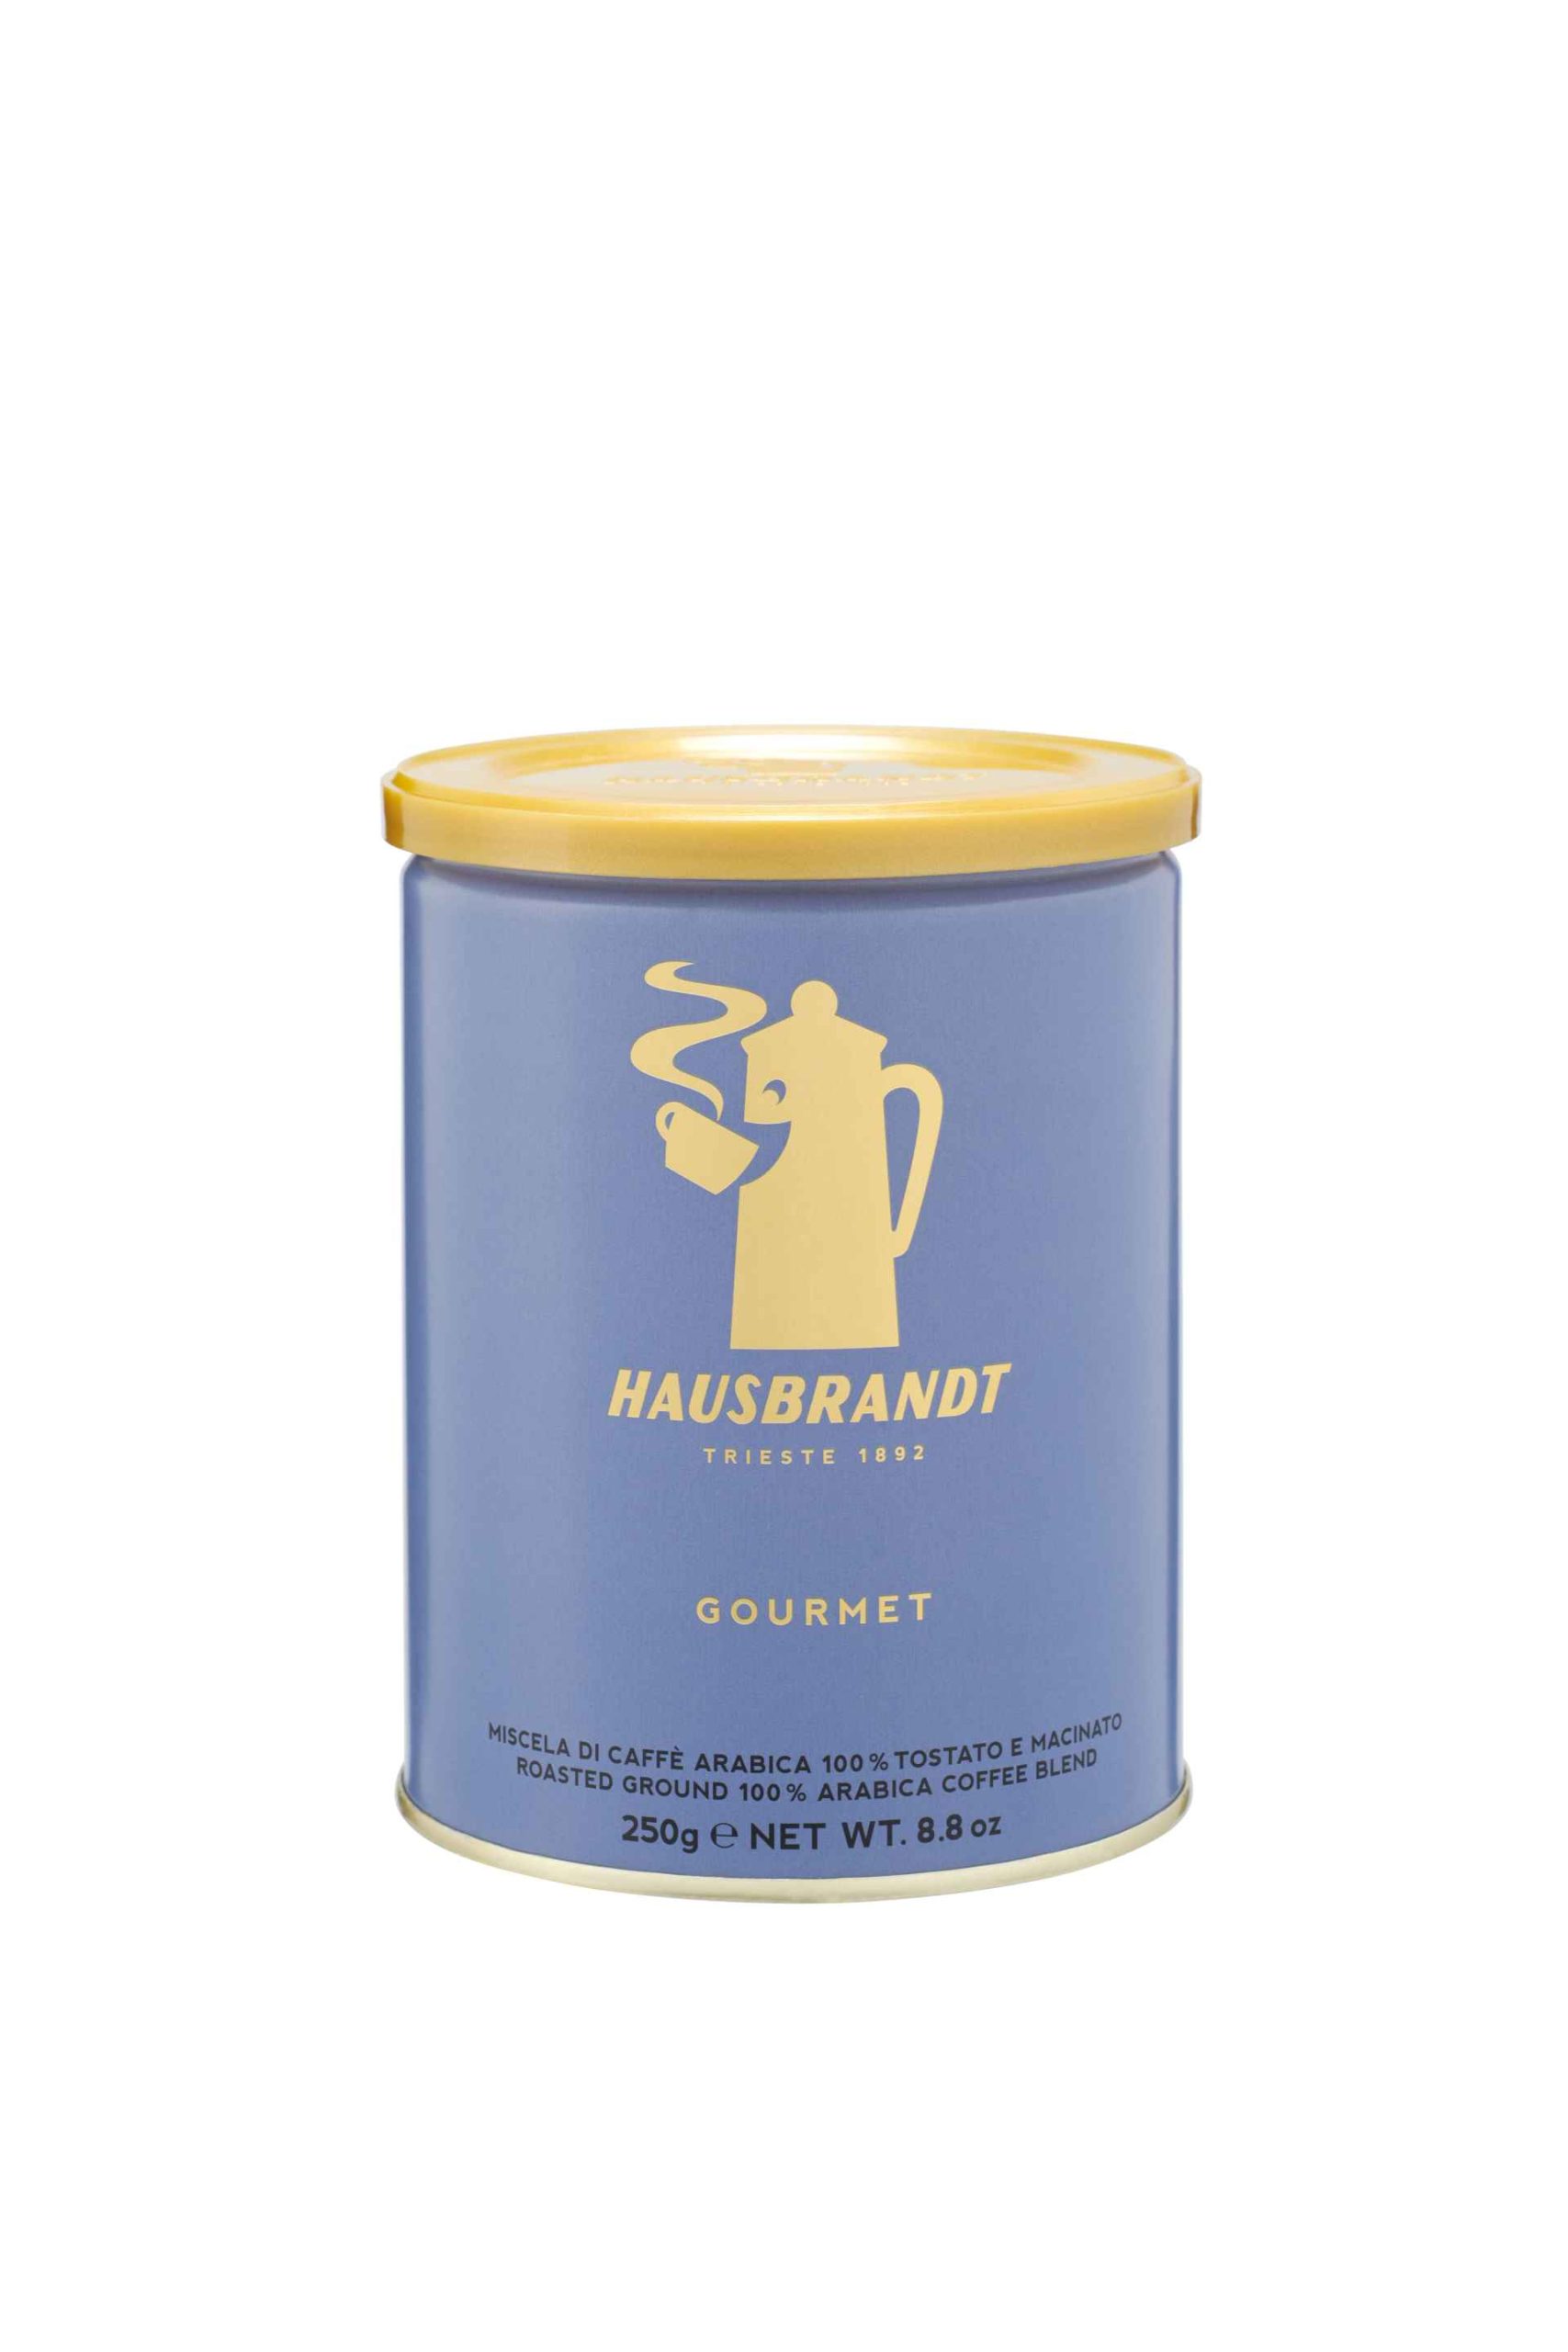 COFFEE ESPRESSO GOURMET TIN 250gr GROUND HAUSBRANDT